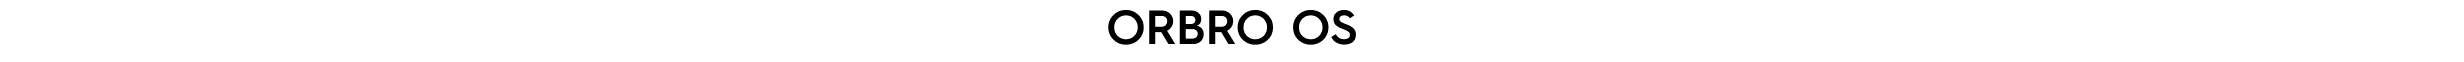 ORBRO OS Logo